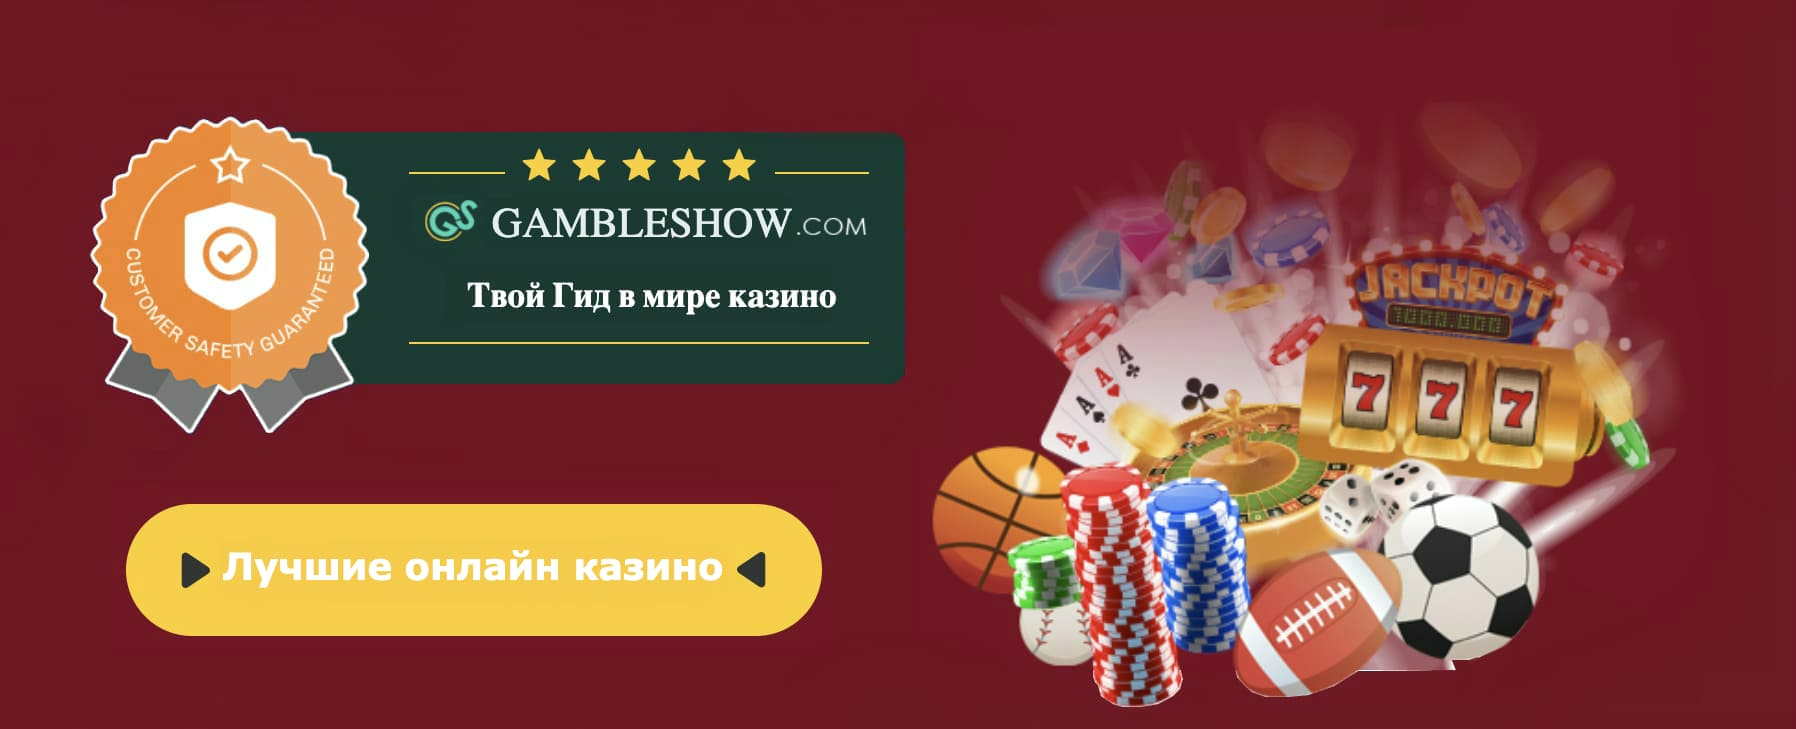 Casinos bitcoin ao vivo online